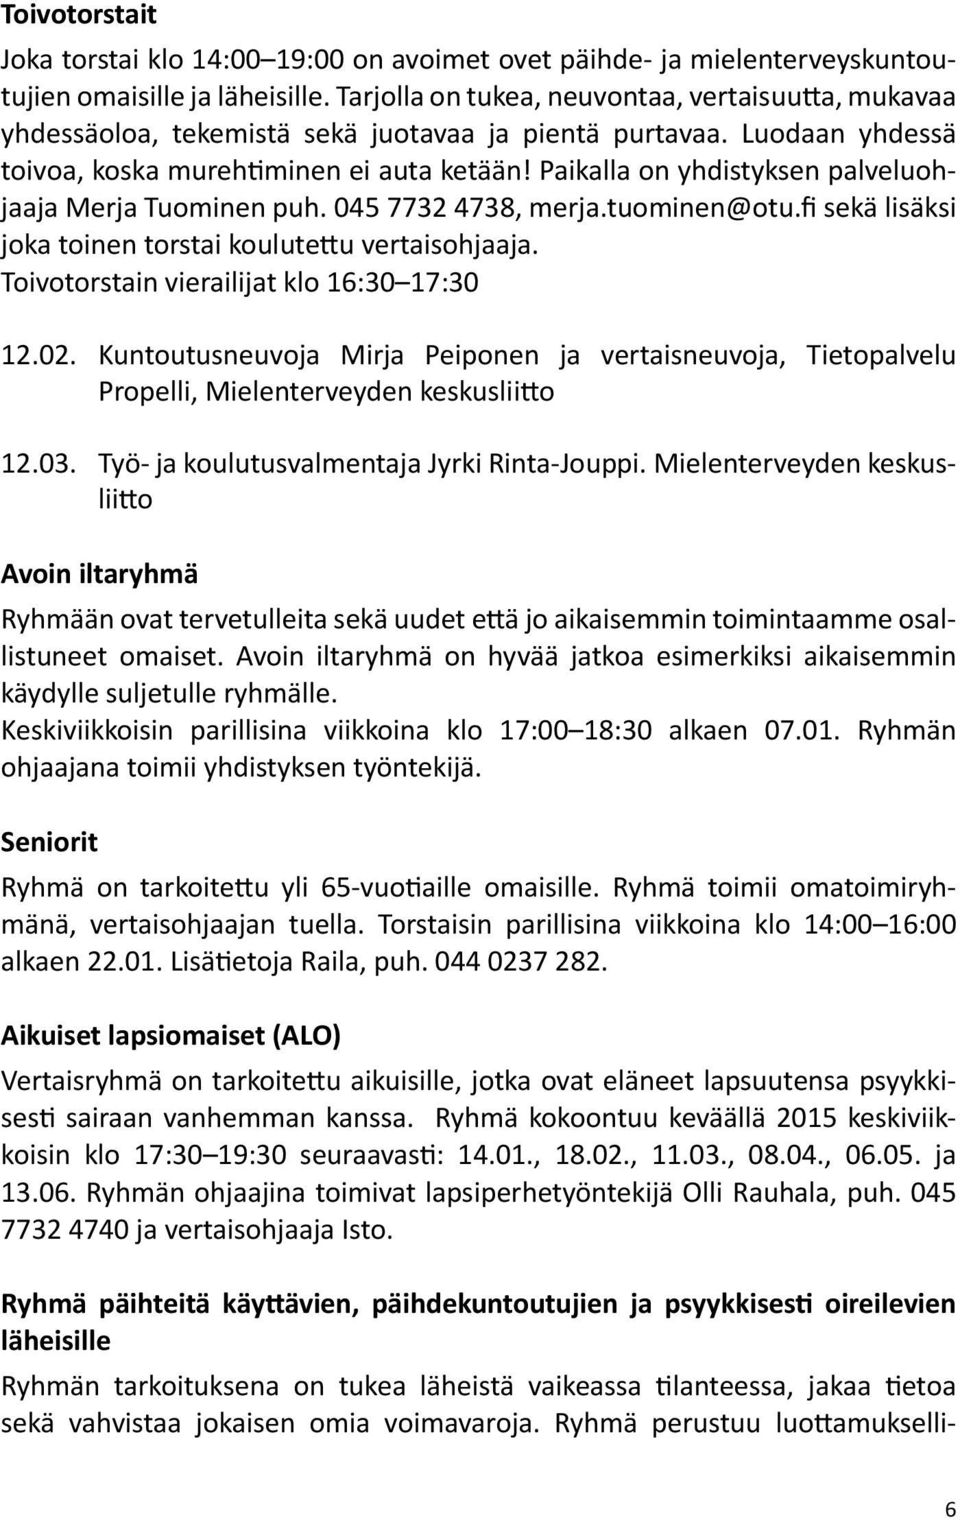 Paikalla on yhdistyksen palveluohjaaja Merja Tuominen puh. 045 7732 4738, merja.tuominen@otu.fi sekä lisäksi joka toinen torstai koulutettu vertaisohjaaja.